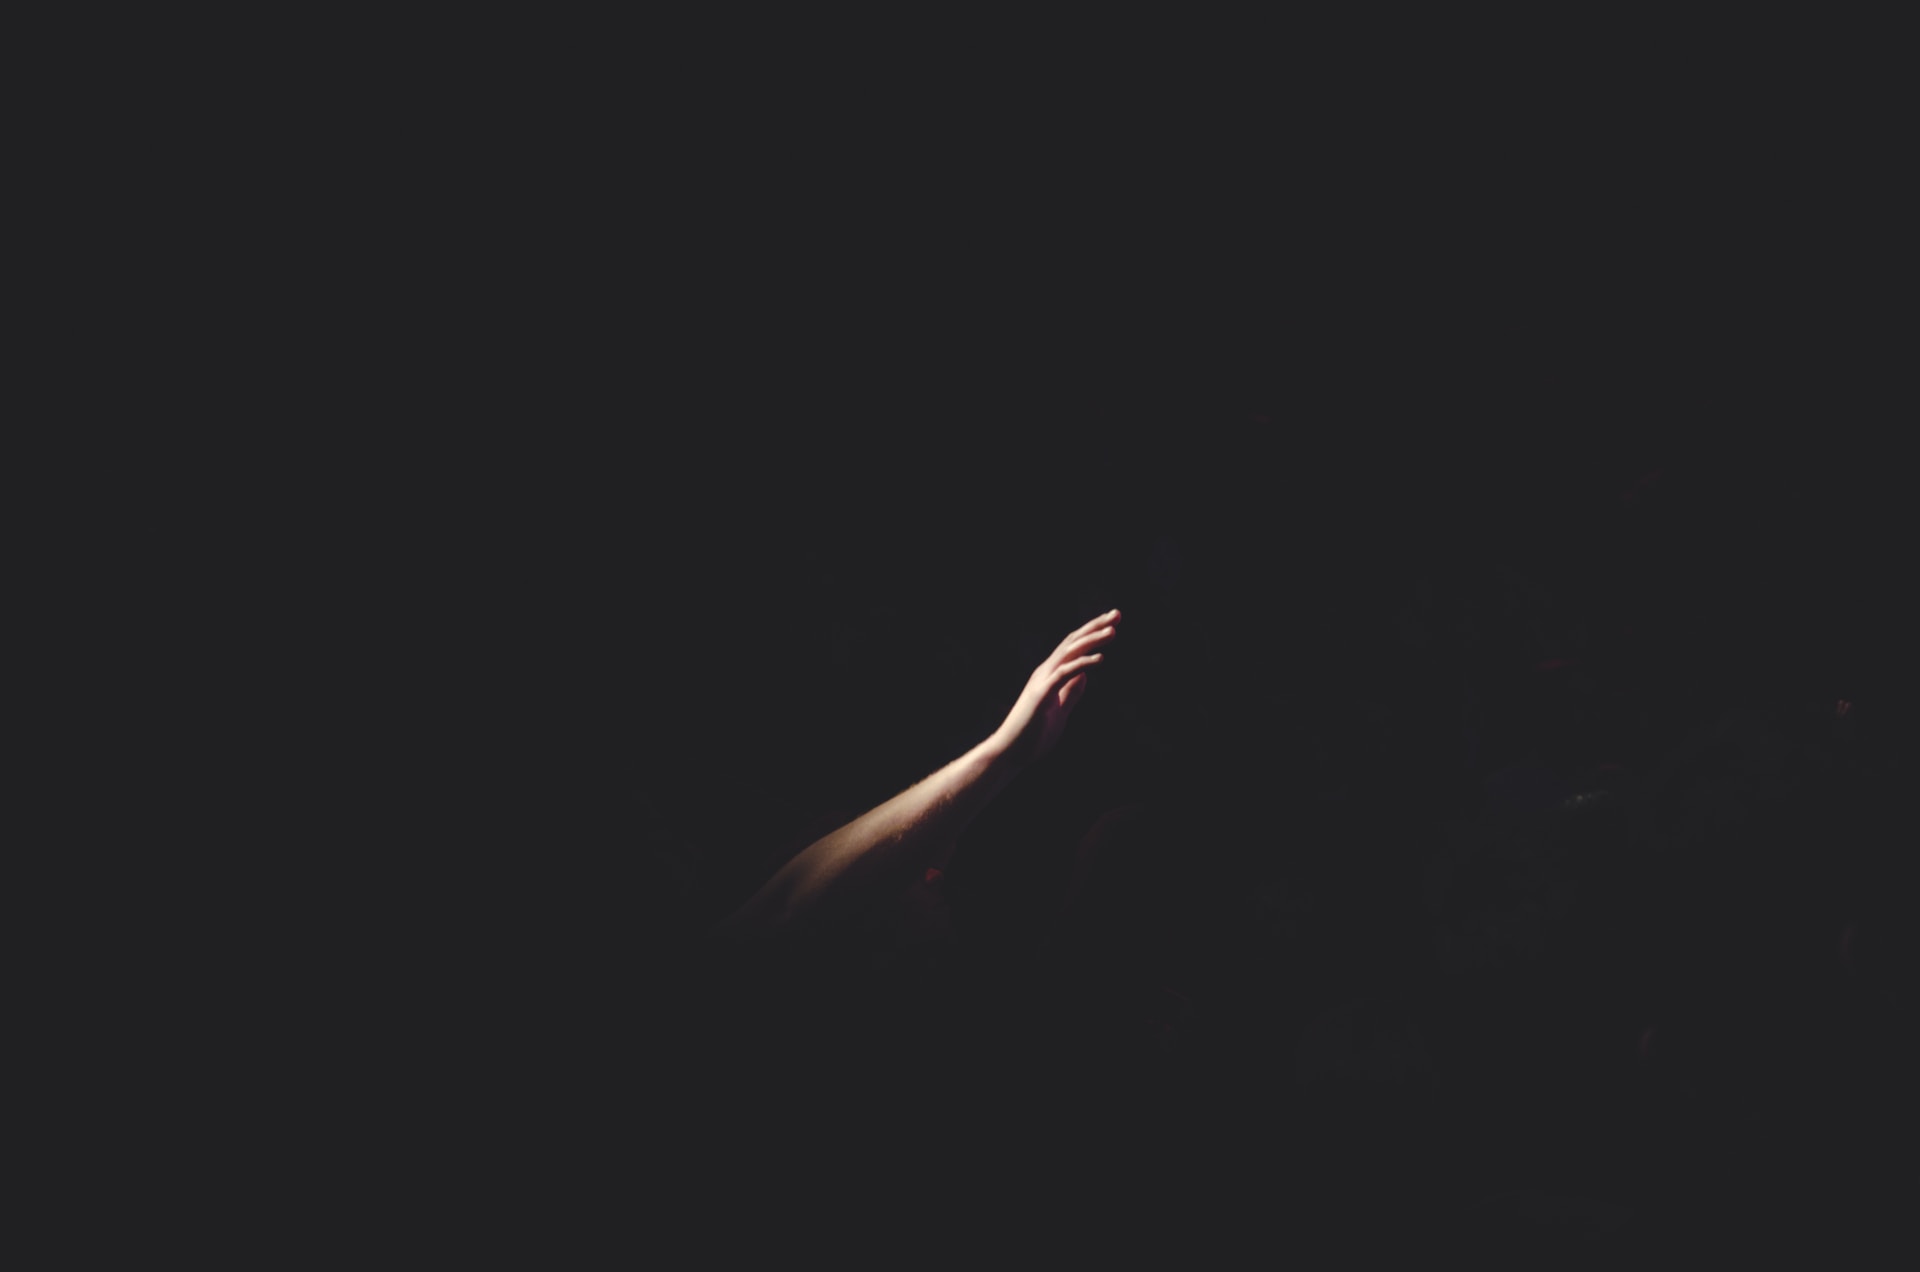 un bras tendu dans le noir - Photo by Cherry Laithang on https://unsplash.com/fr/photos/main-droite-de-lhomme-NmPpz1jA_JE